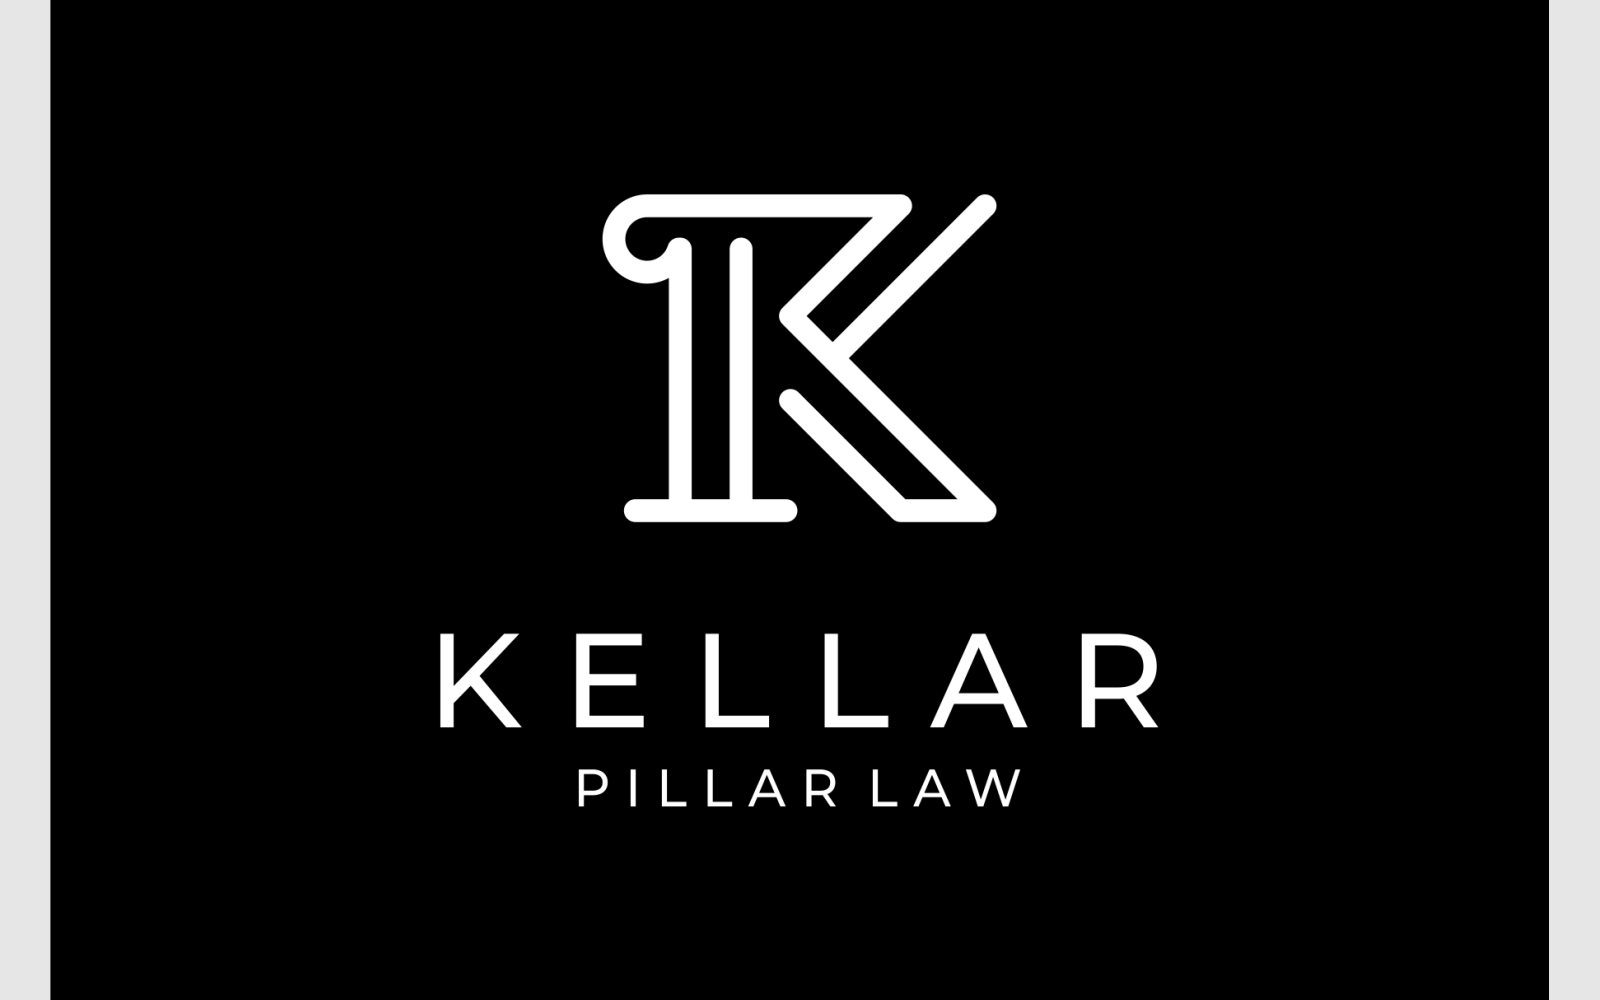 Letter K Pillar Column Law Firm Logo